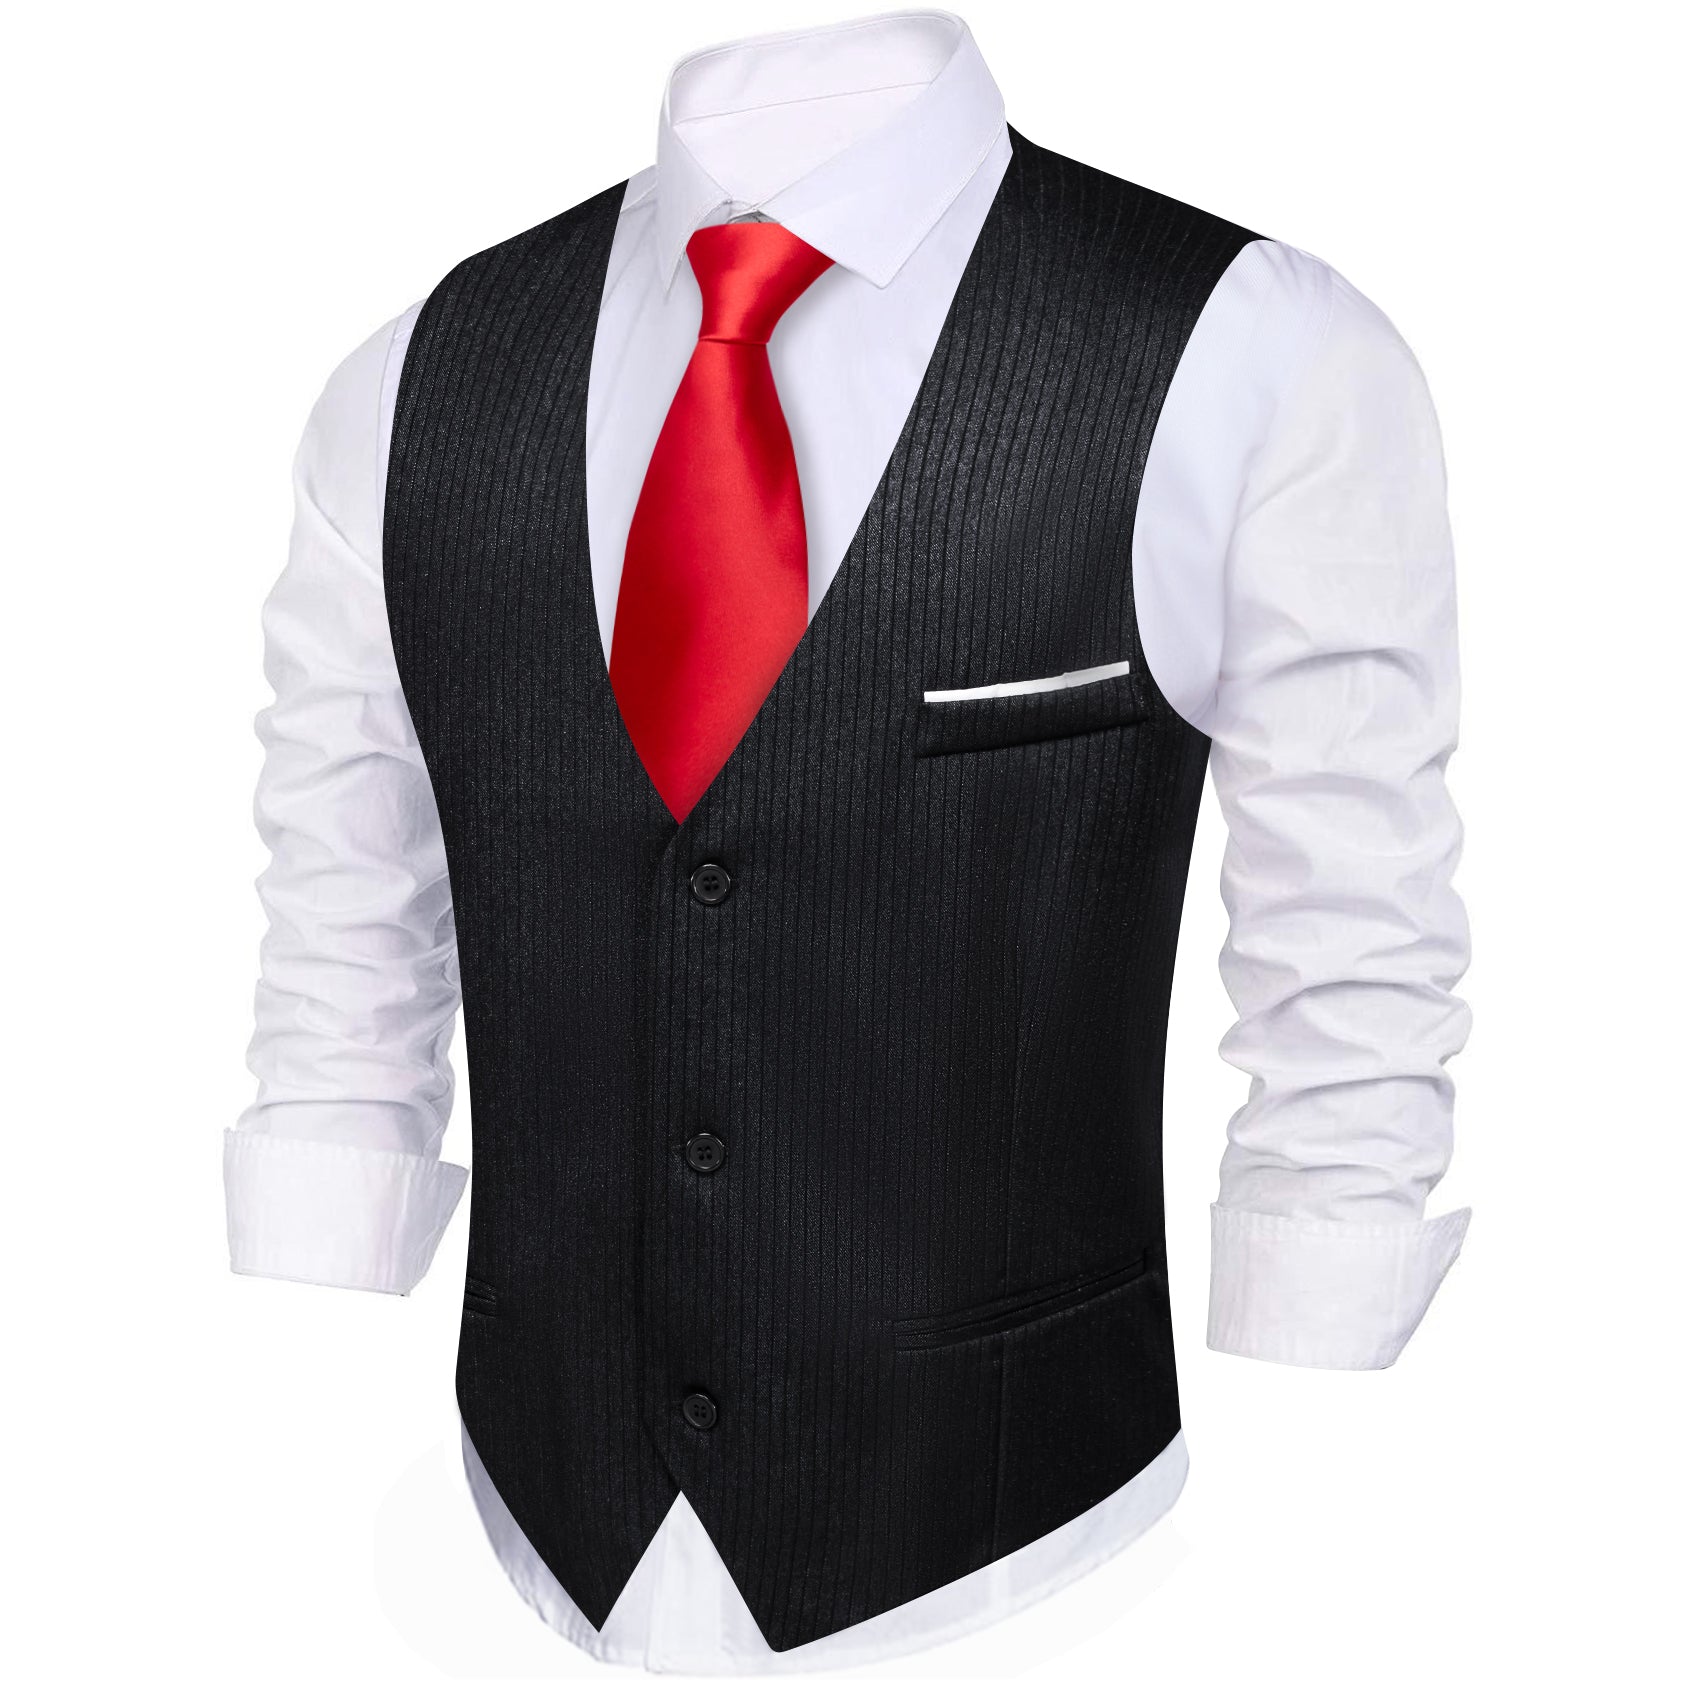 Barry.wang Black Solid Business Vest Suit